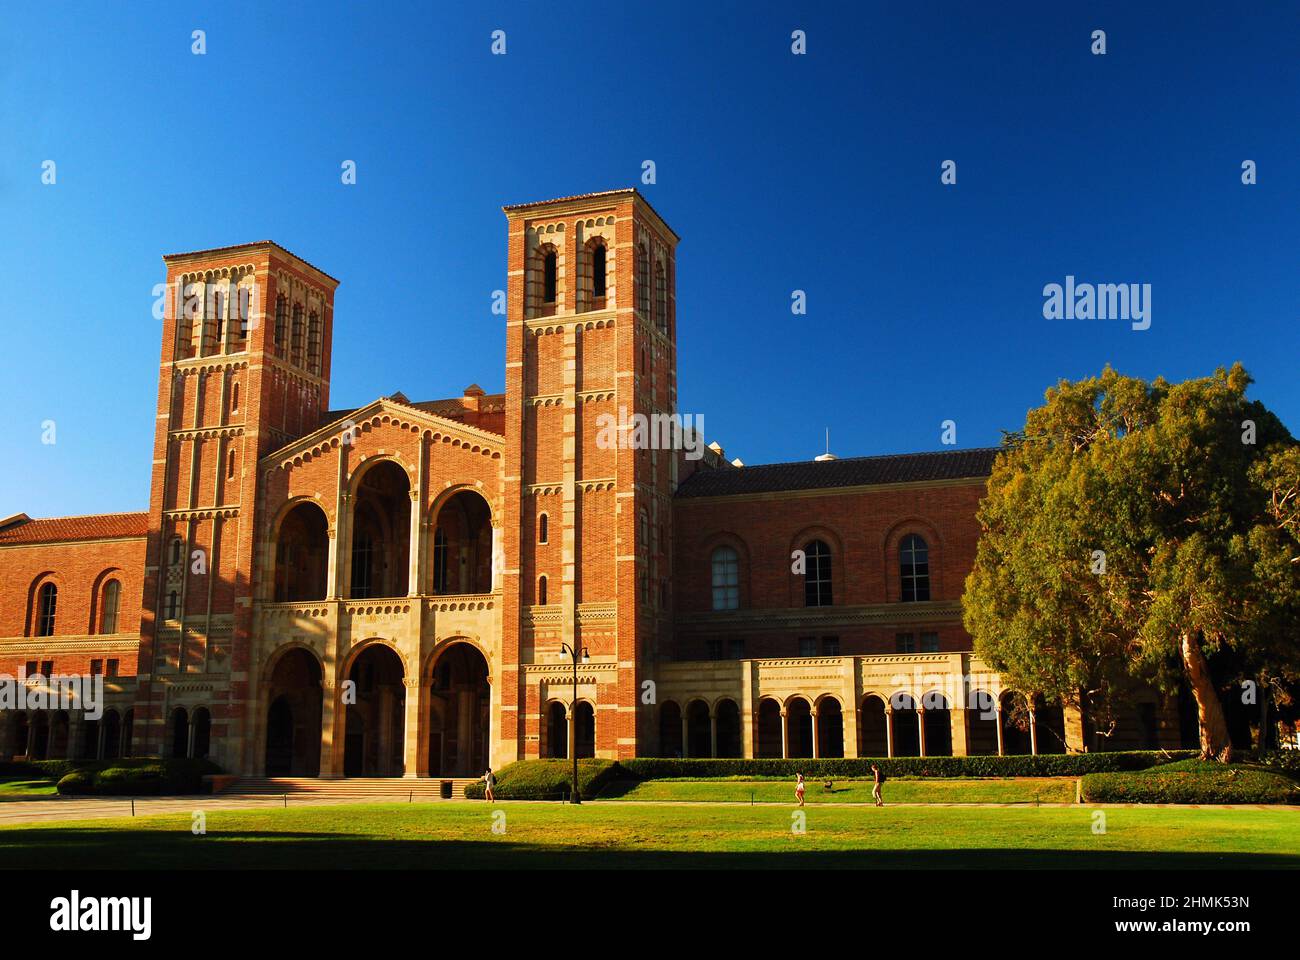 Le Royce Hall historique, situé sur le campus universitaire de l'UCLA, sert de salle de spectacle, de théâtre et d'auditorium Banque D'Images